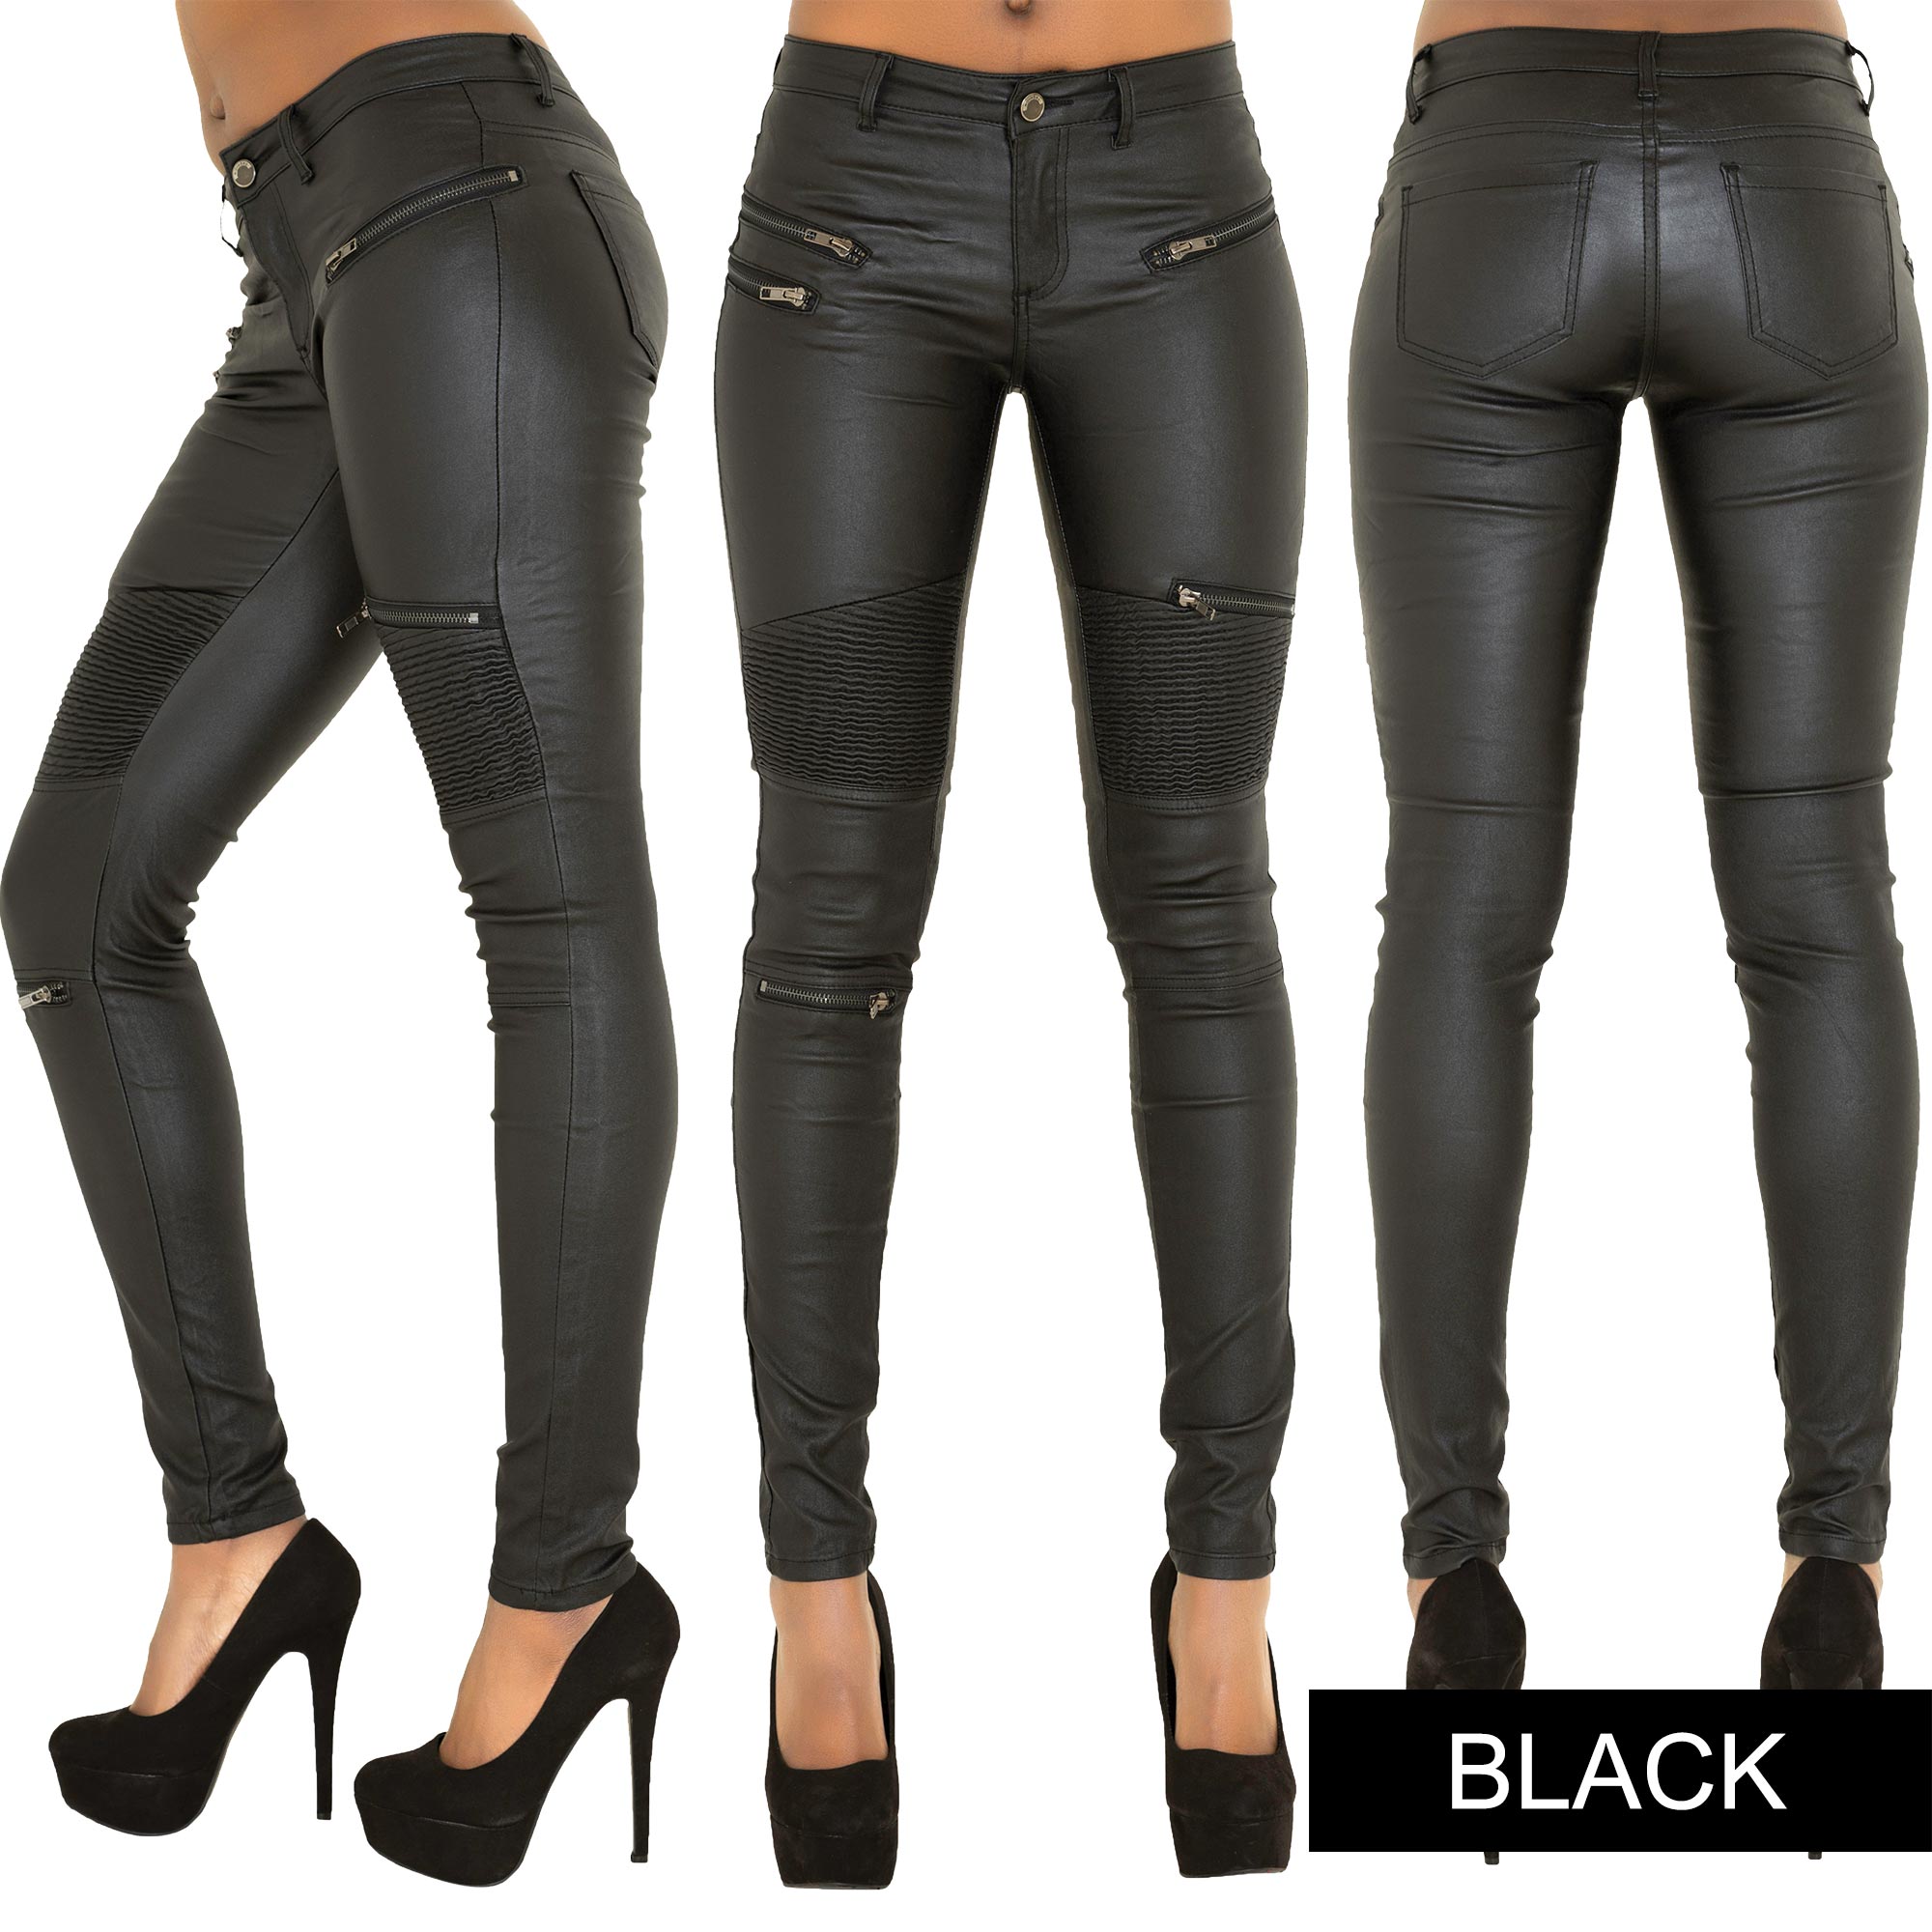 Black Leather-Look Biker Leggings